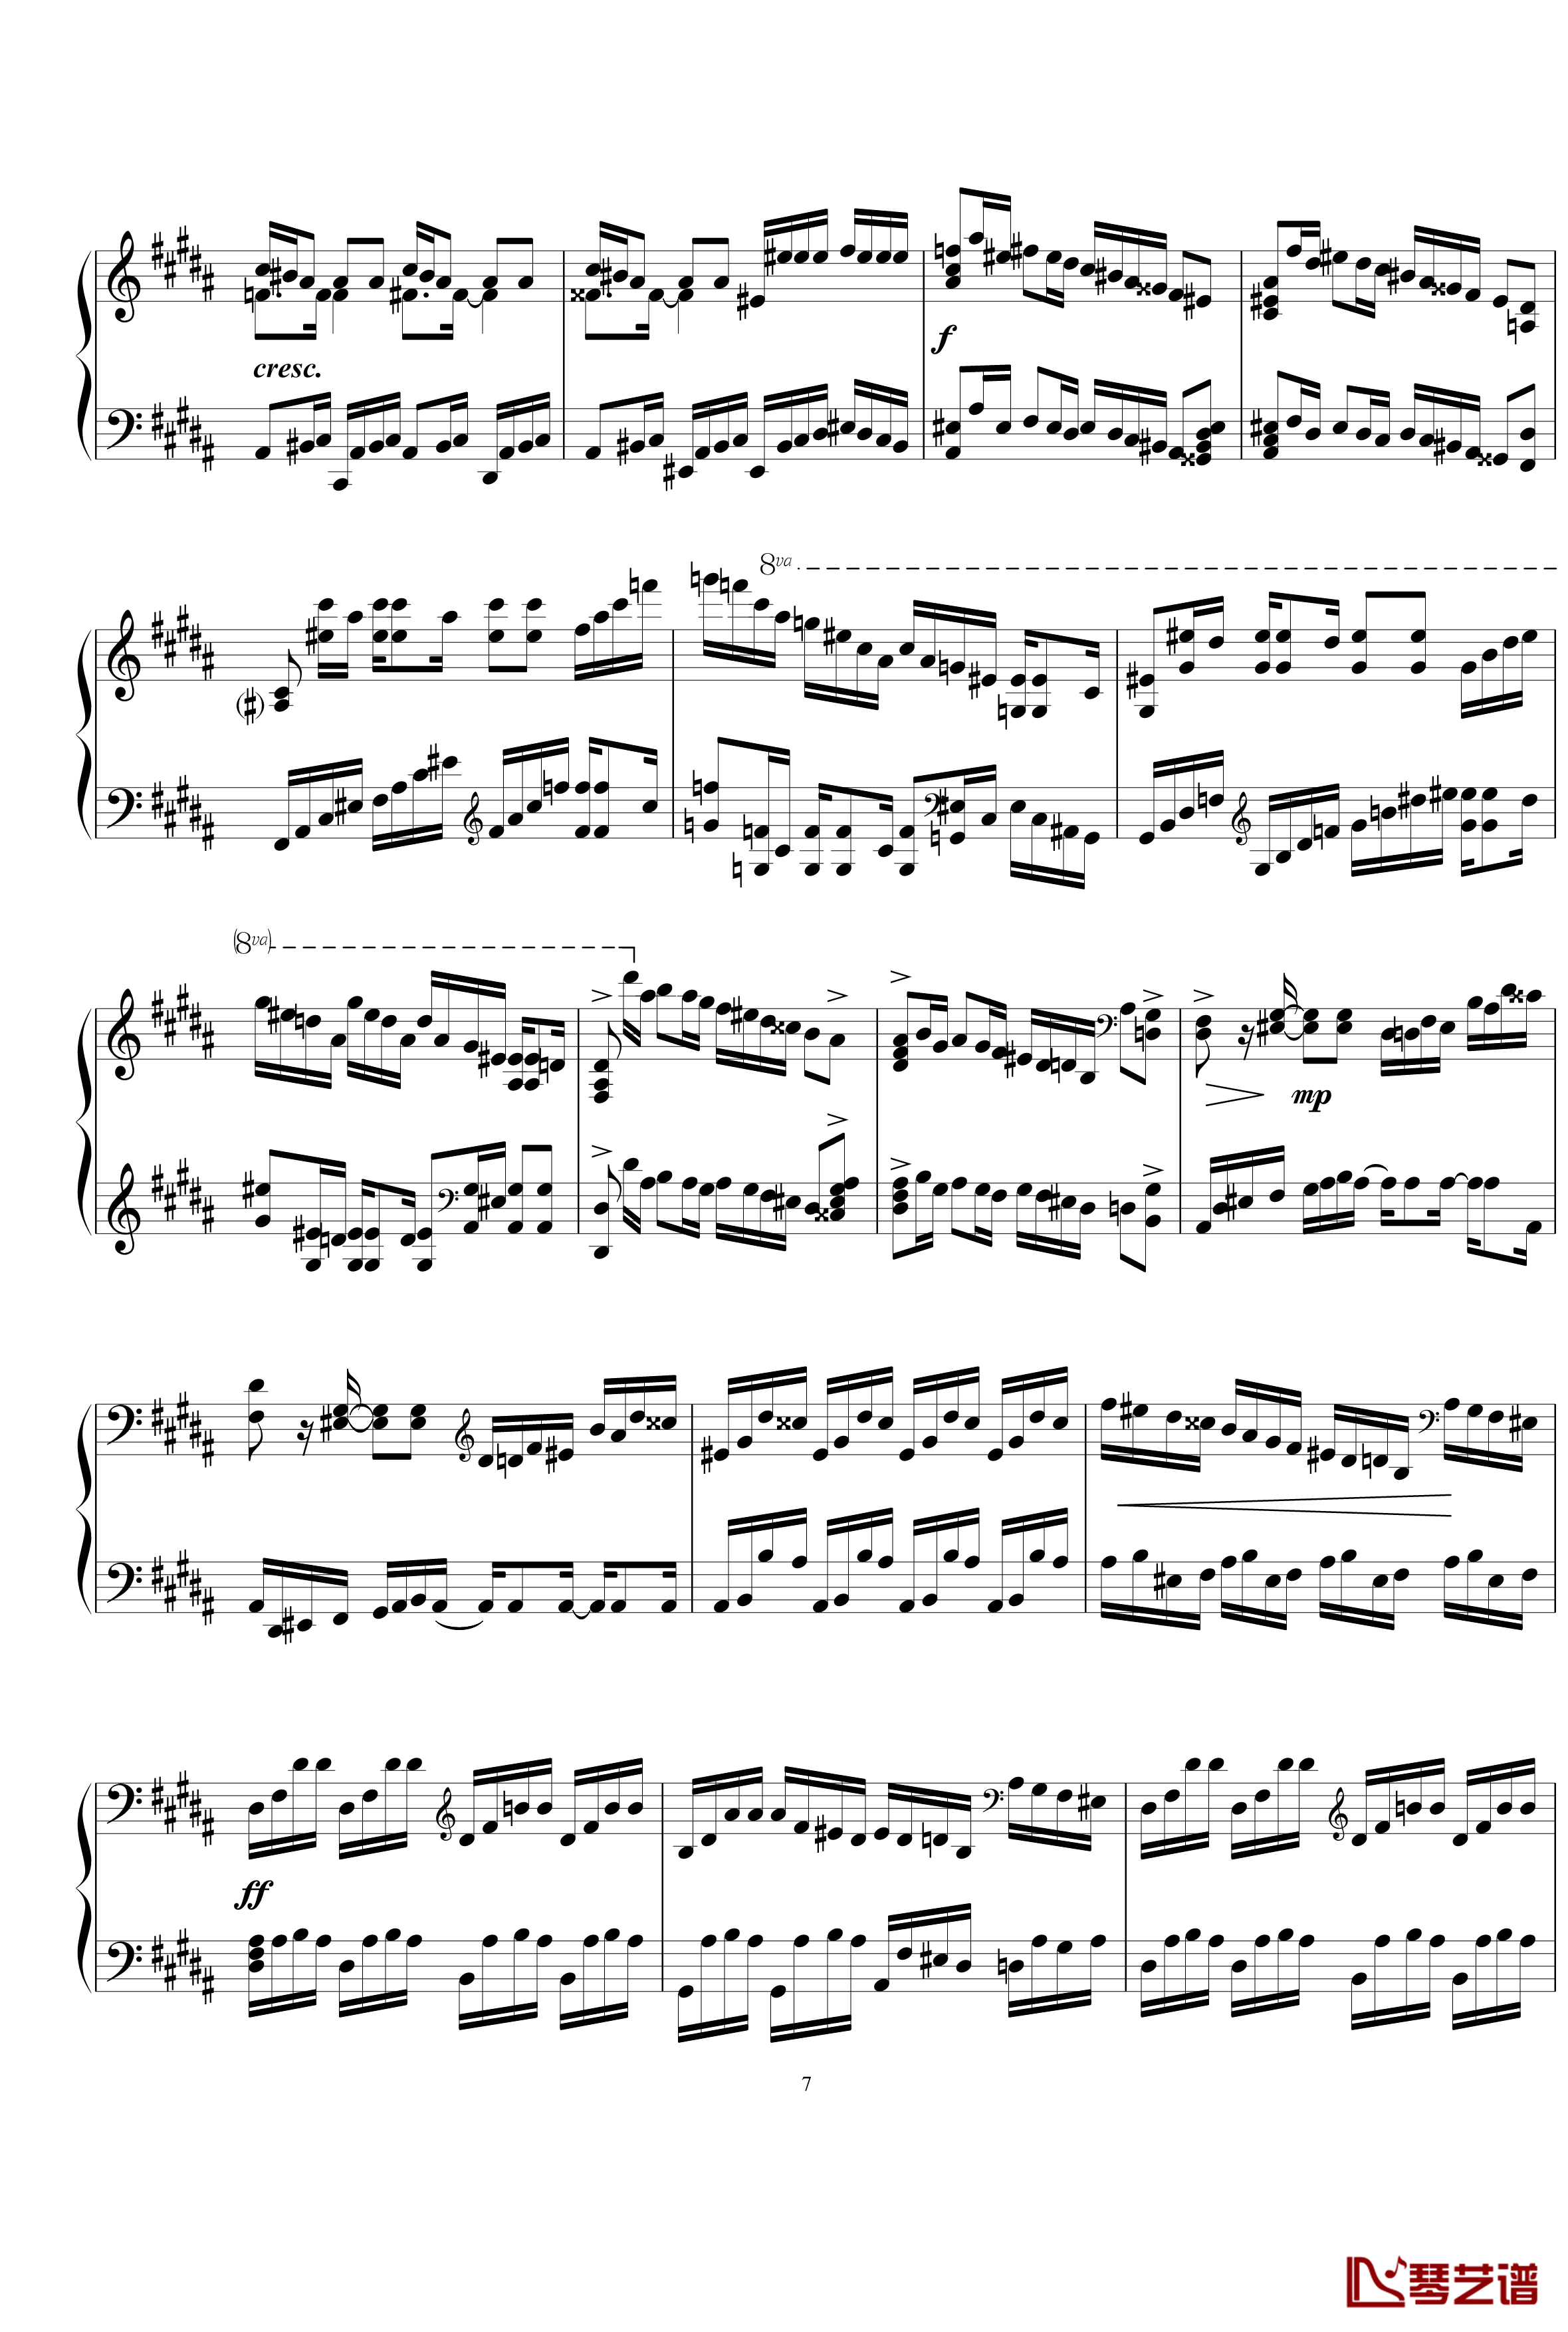 练习曲钢琴谱1.5-gzf1357